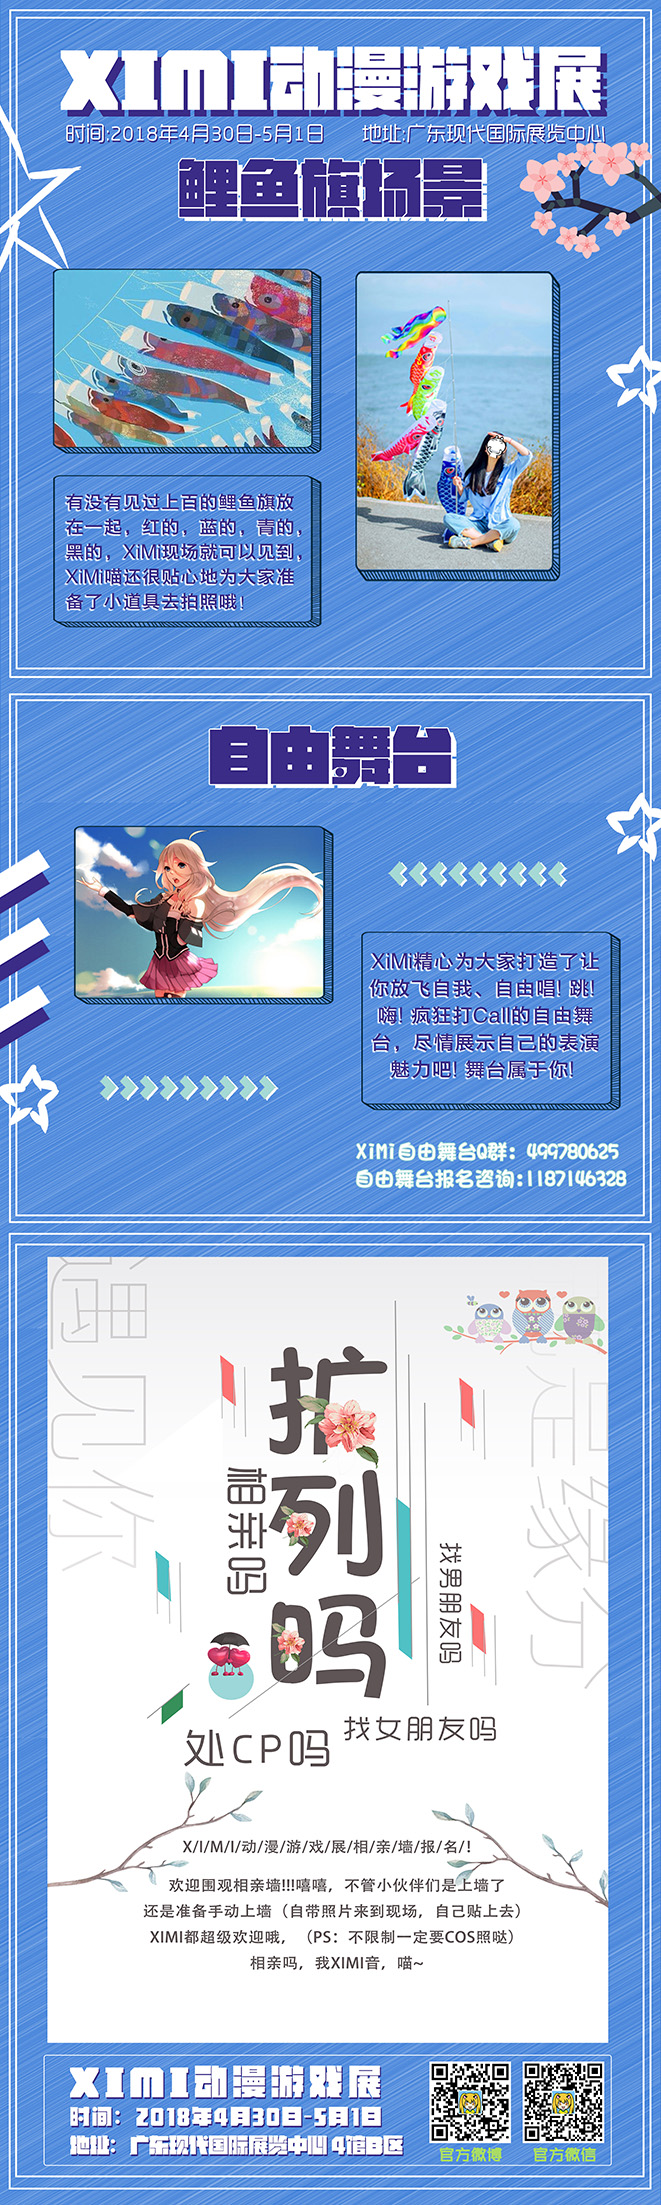 【震撼终宣】东莞XiMi动漫游戏展 “梦想与奋斗，致自己”-C3动漫网